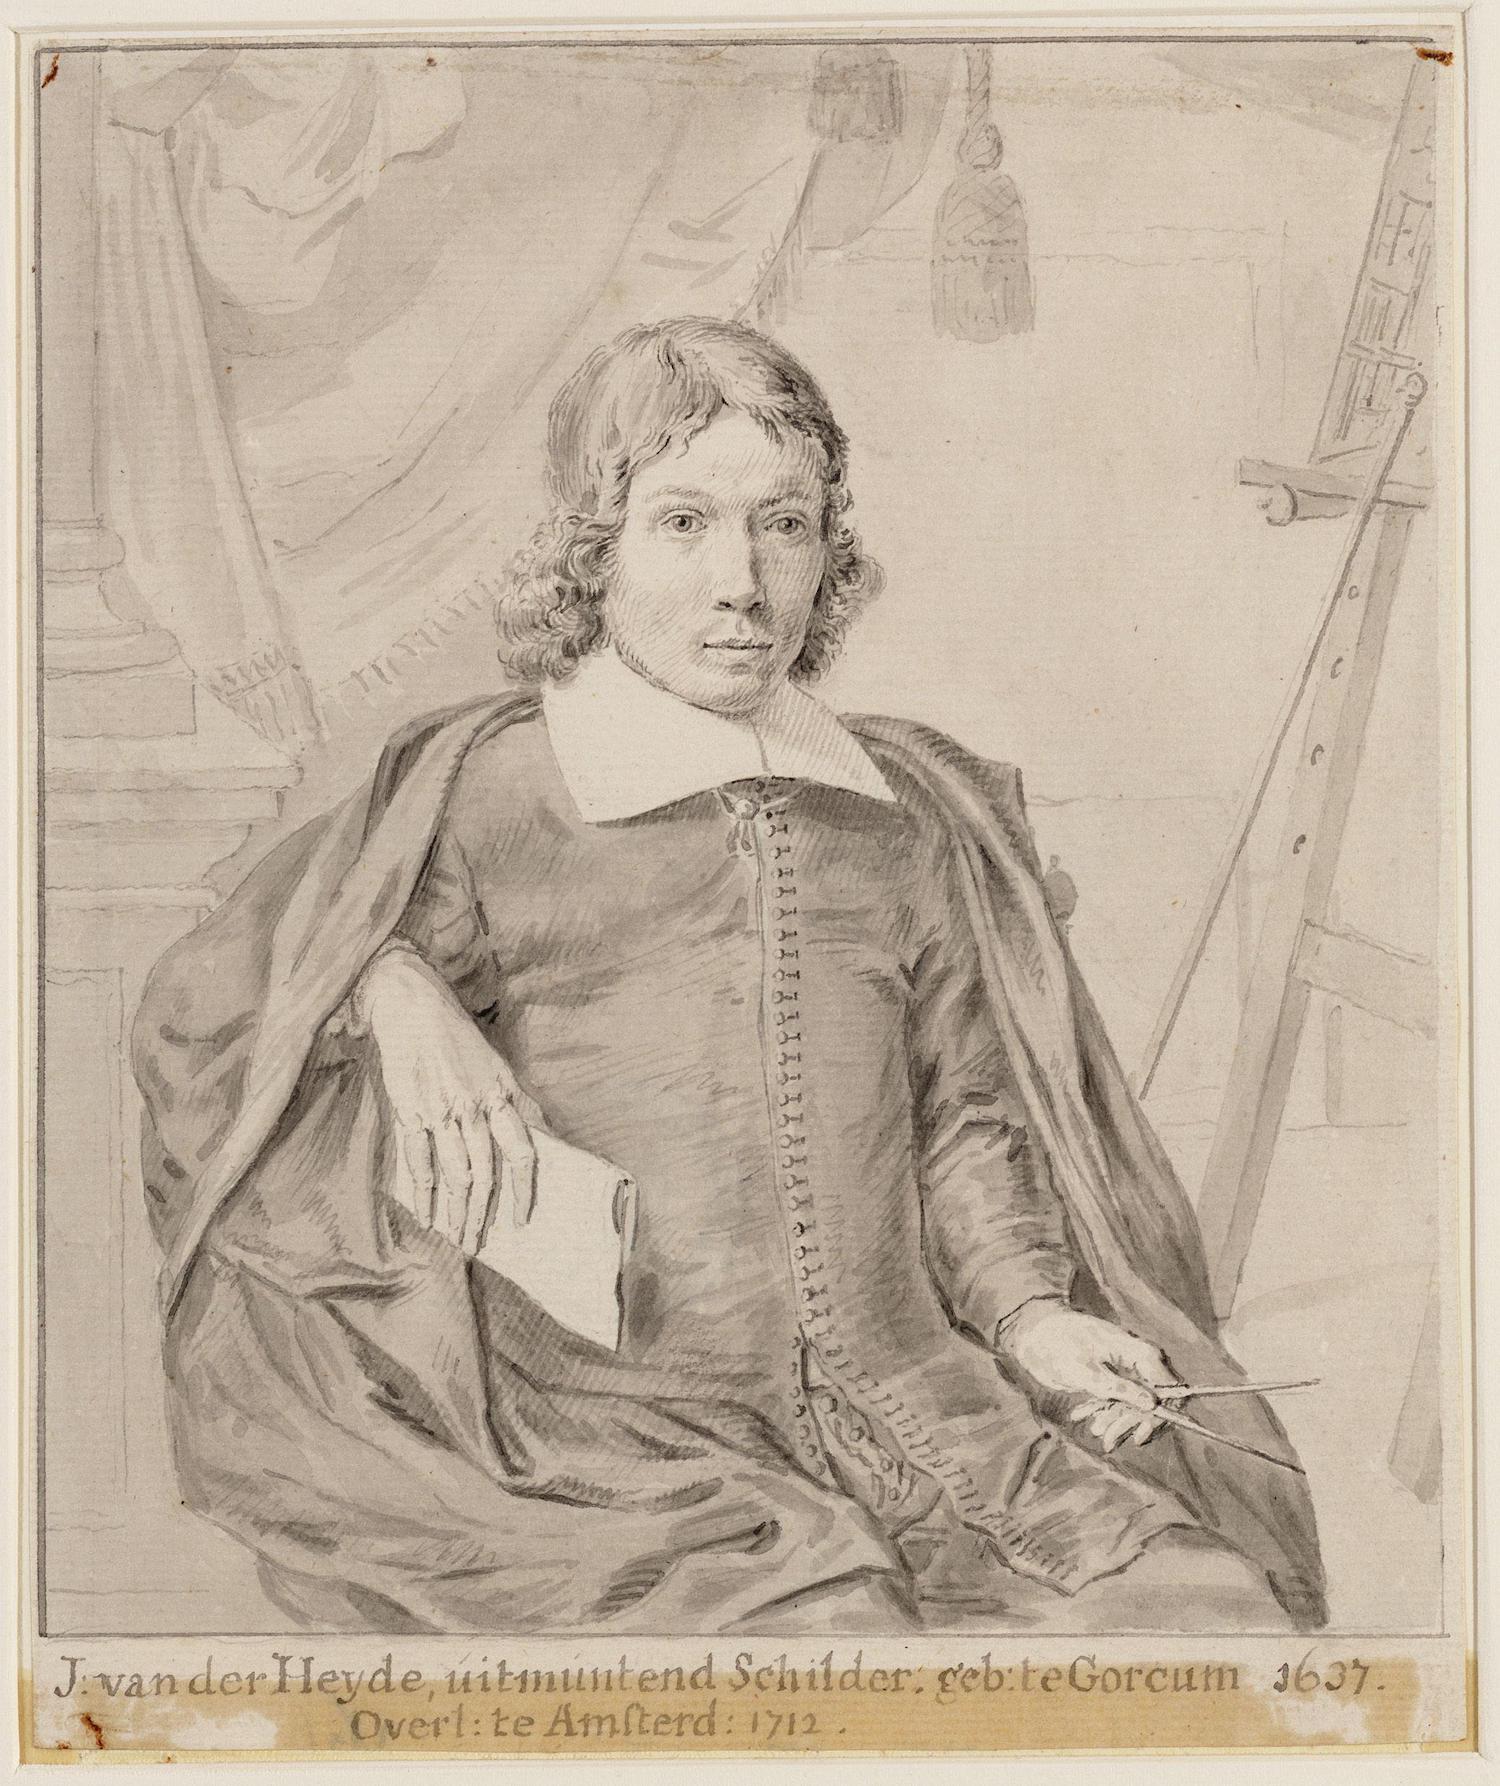 Jan van der Heyden - 5 March 1637 - 28 March 1712